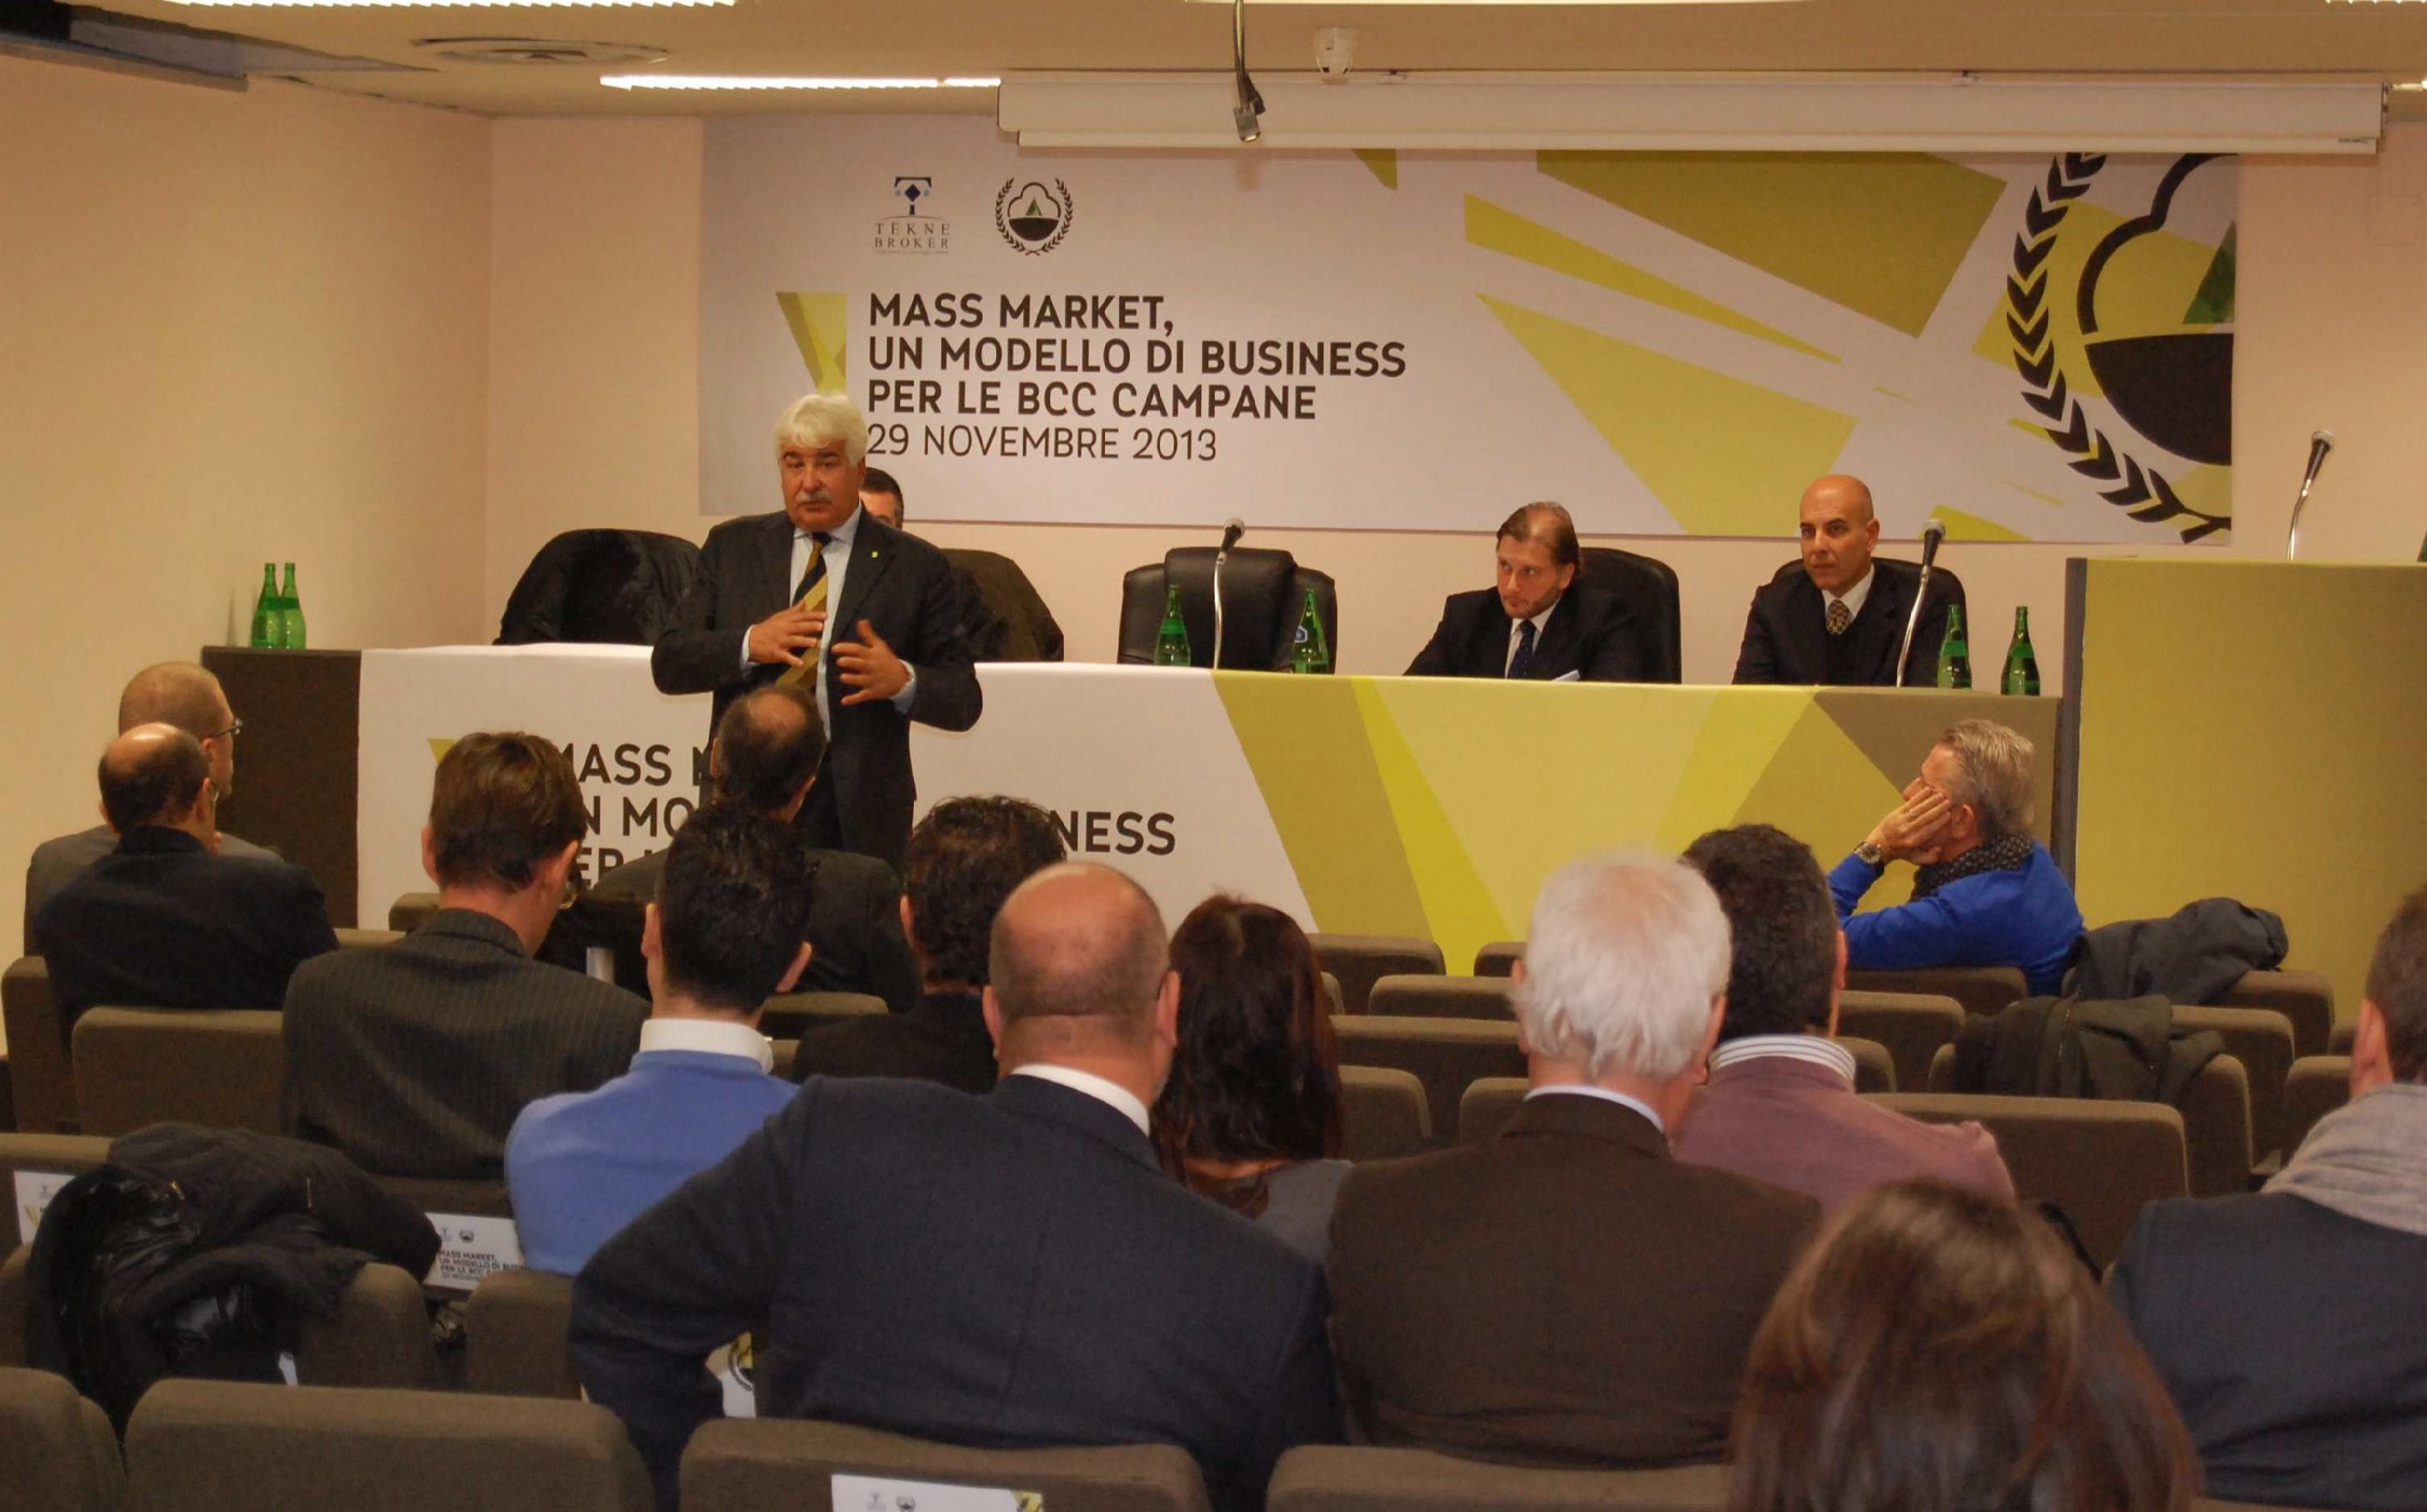 29 Novembre 2013 - Mass Market, un modello di business per le BCC Campane Il dottor Fabrizio Capardoni di ACE presenta all'ampia platea.